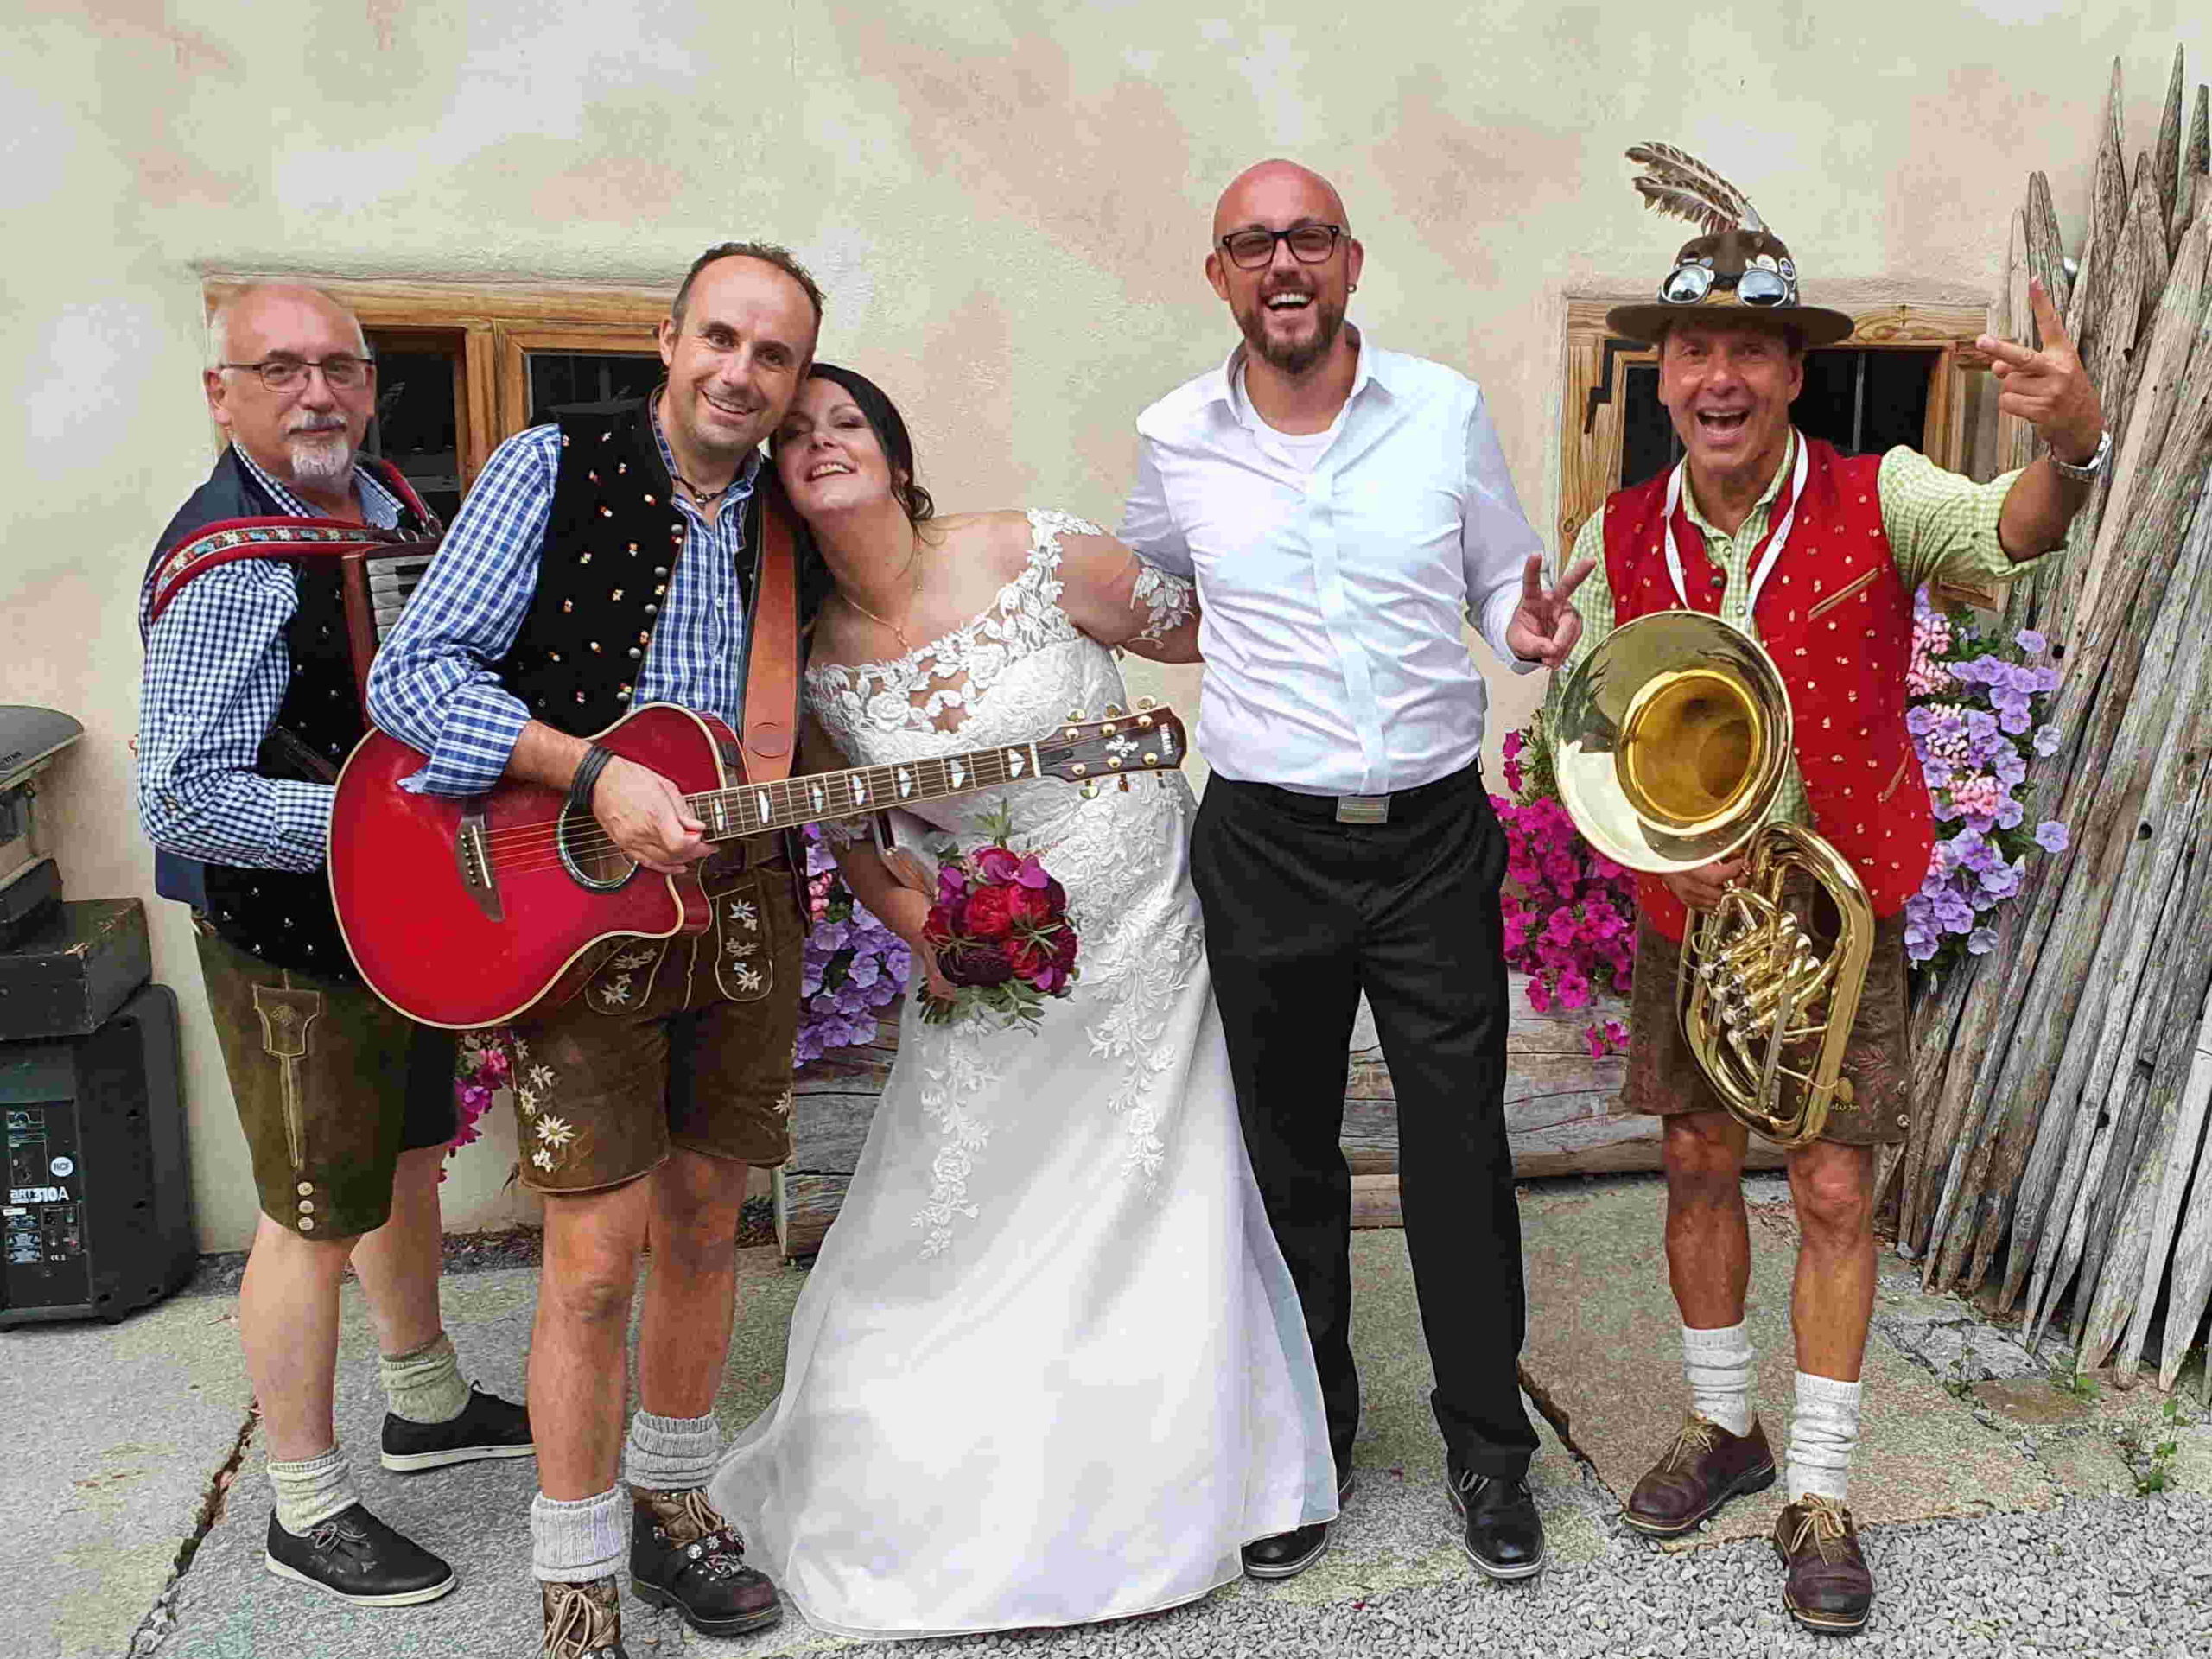 Hochzeitsbands München